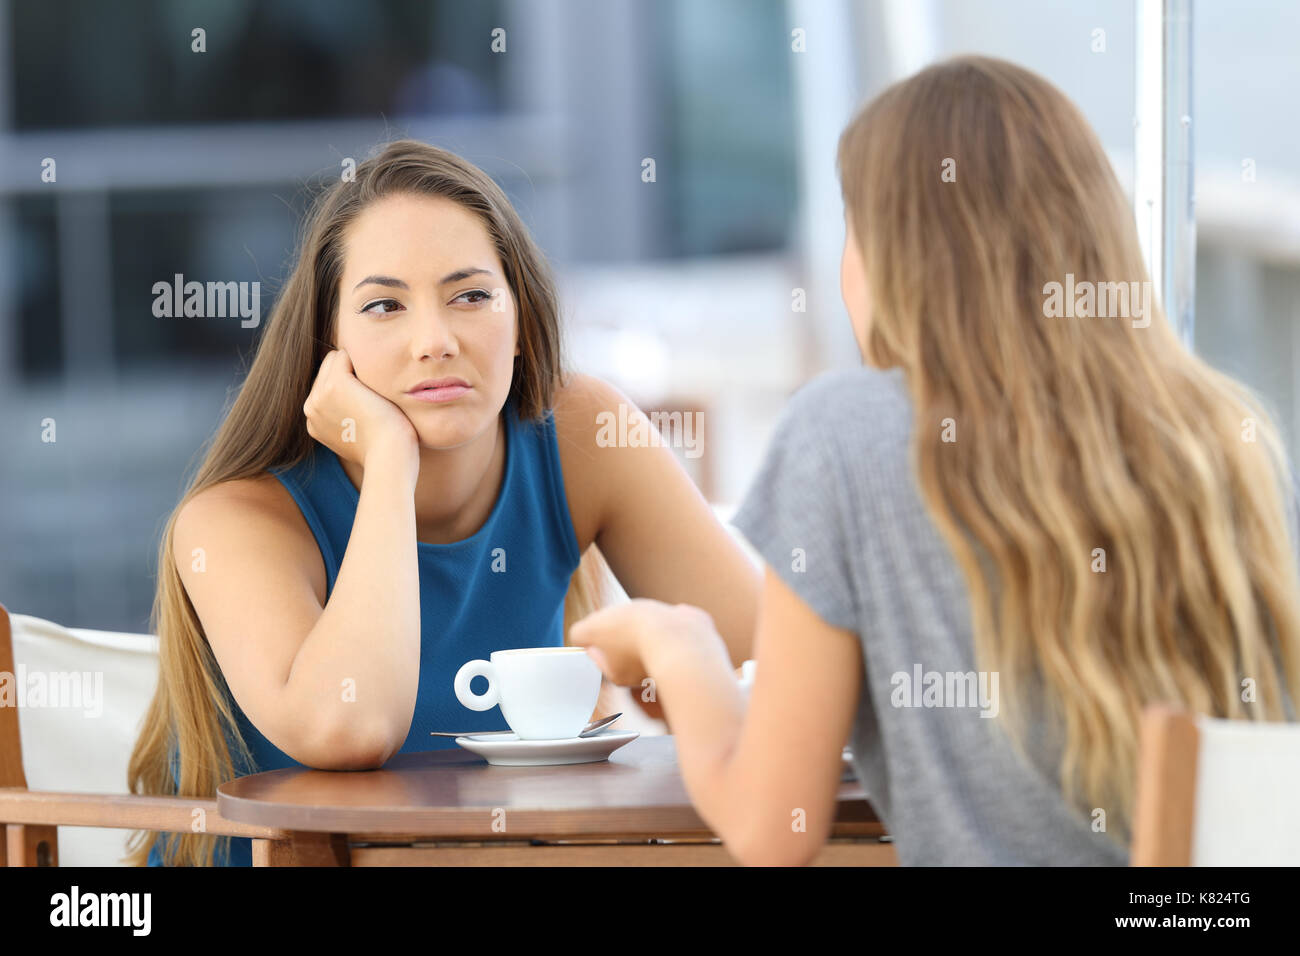 Gelangweilt Mädchen hören ein schlechtes Gespräch in einem Restaurant Terrasse sitzen Stockfoto